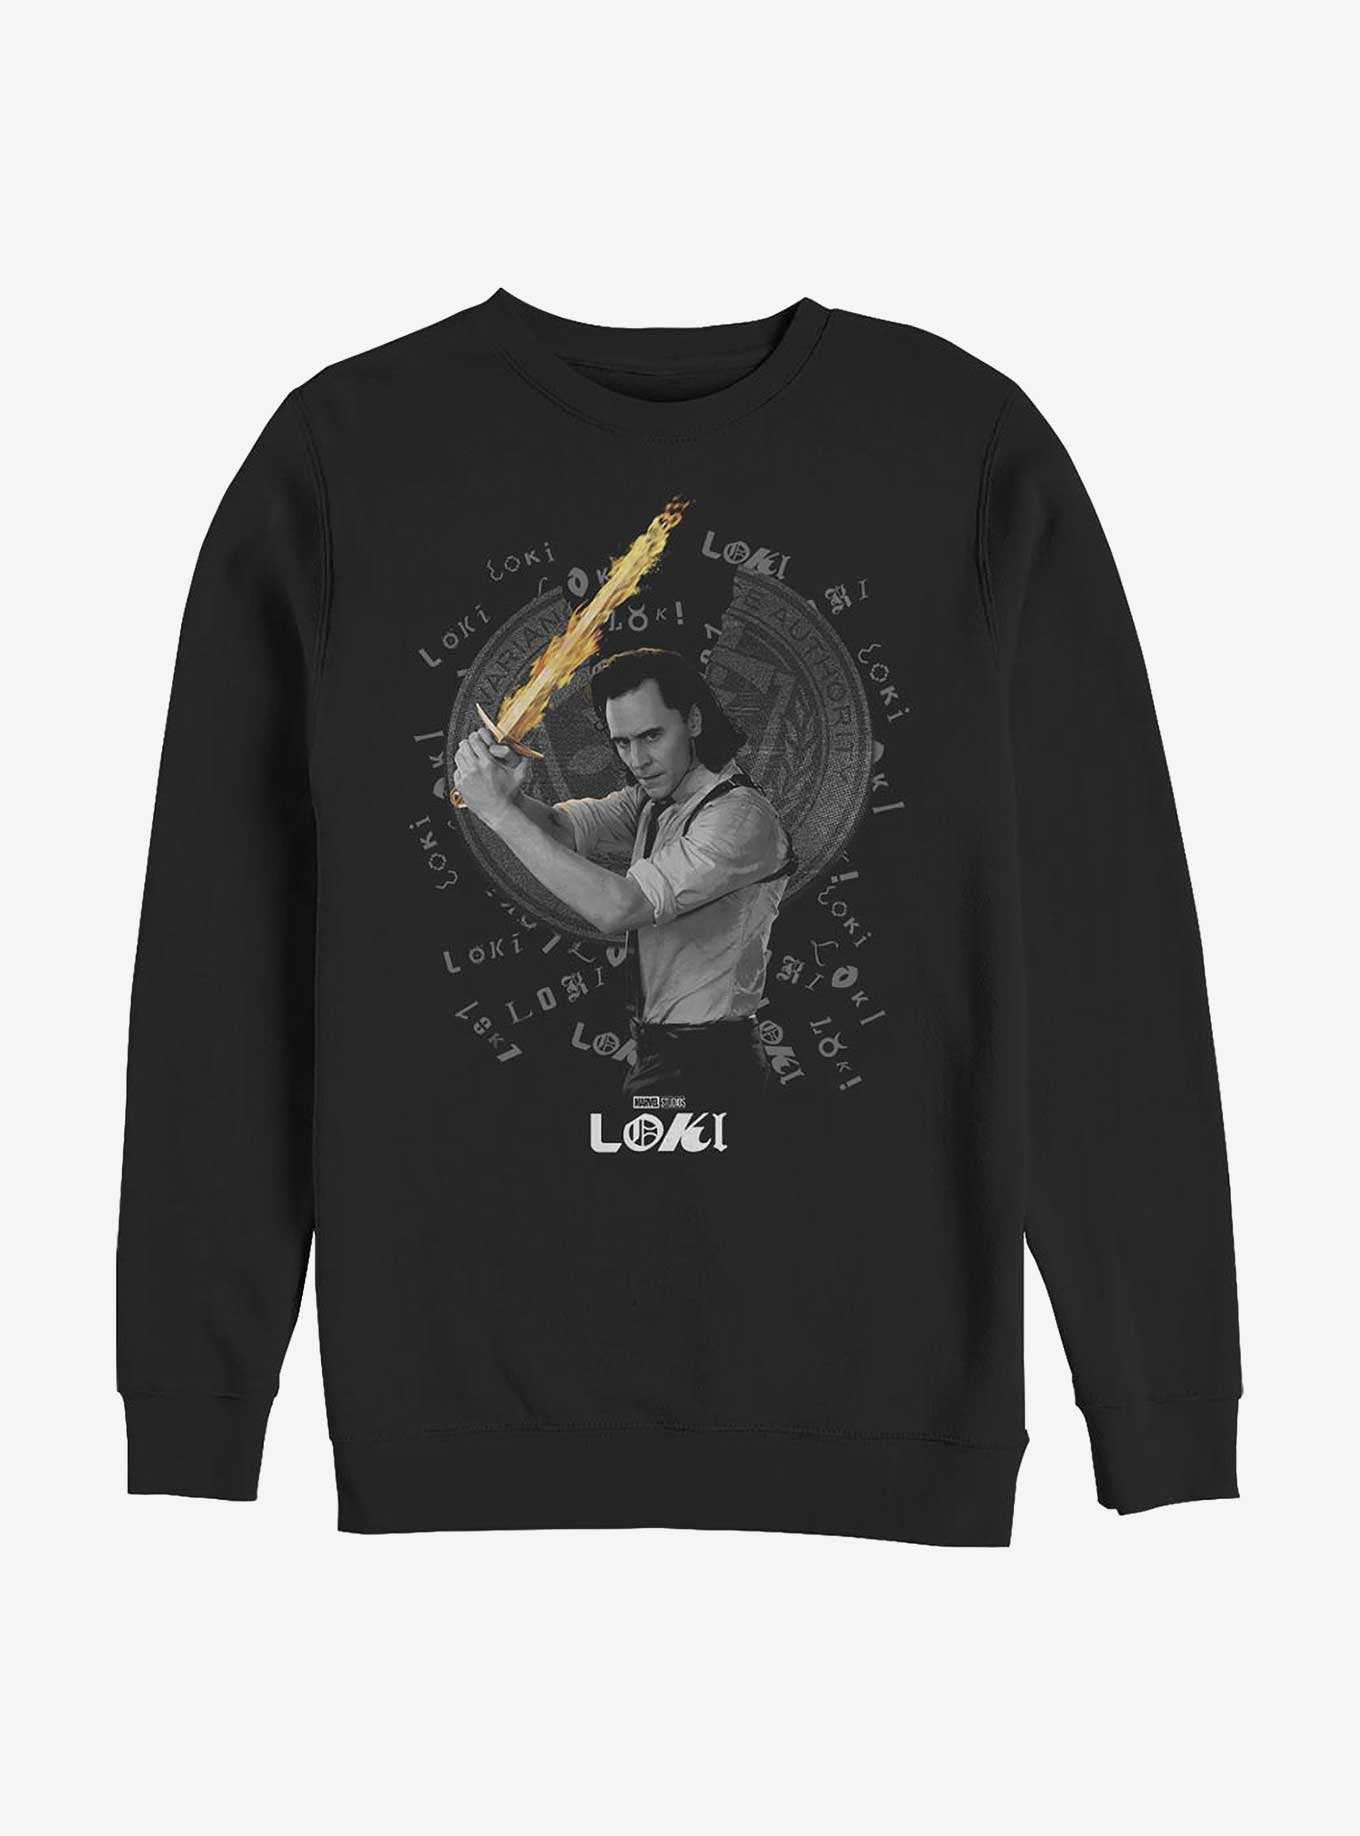 Marvel Loki Laevateinn Sword Sweatshirt, , hi-res